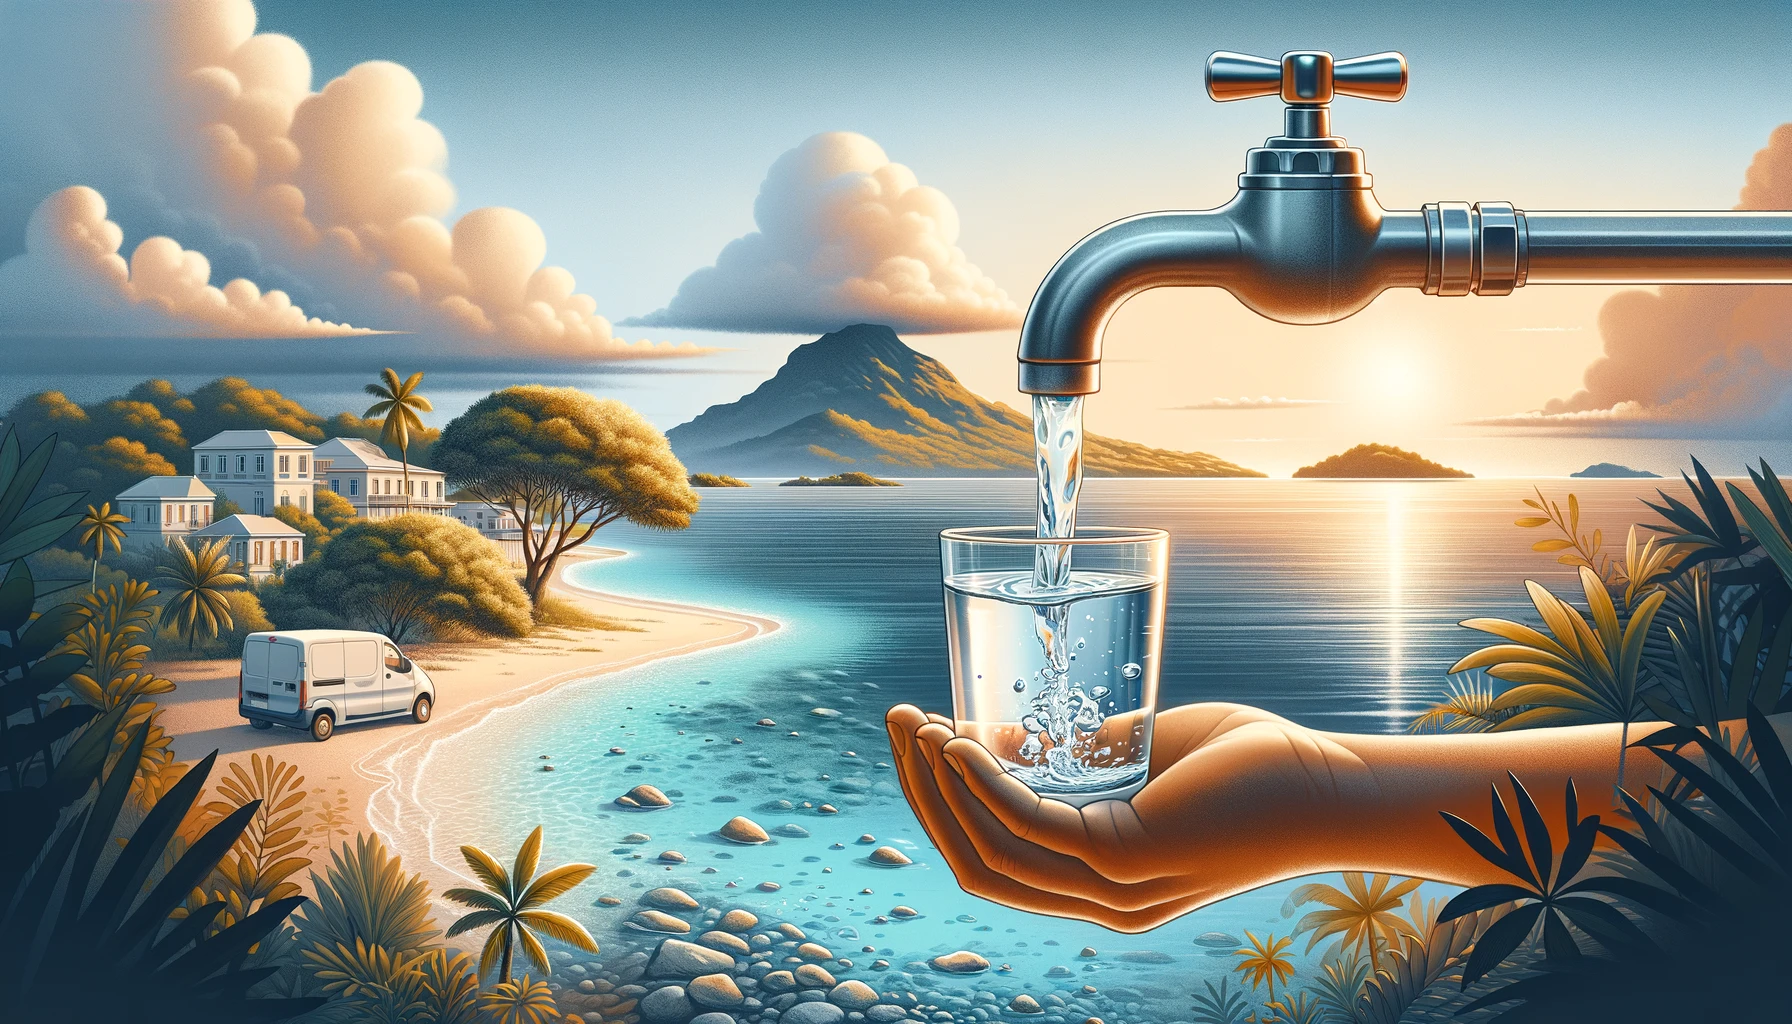 L'interdiction de consommation d'eau levée